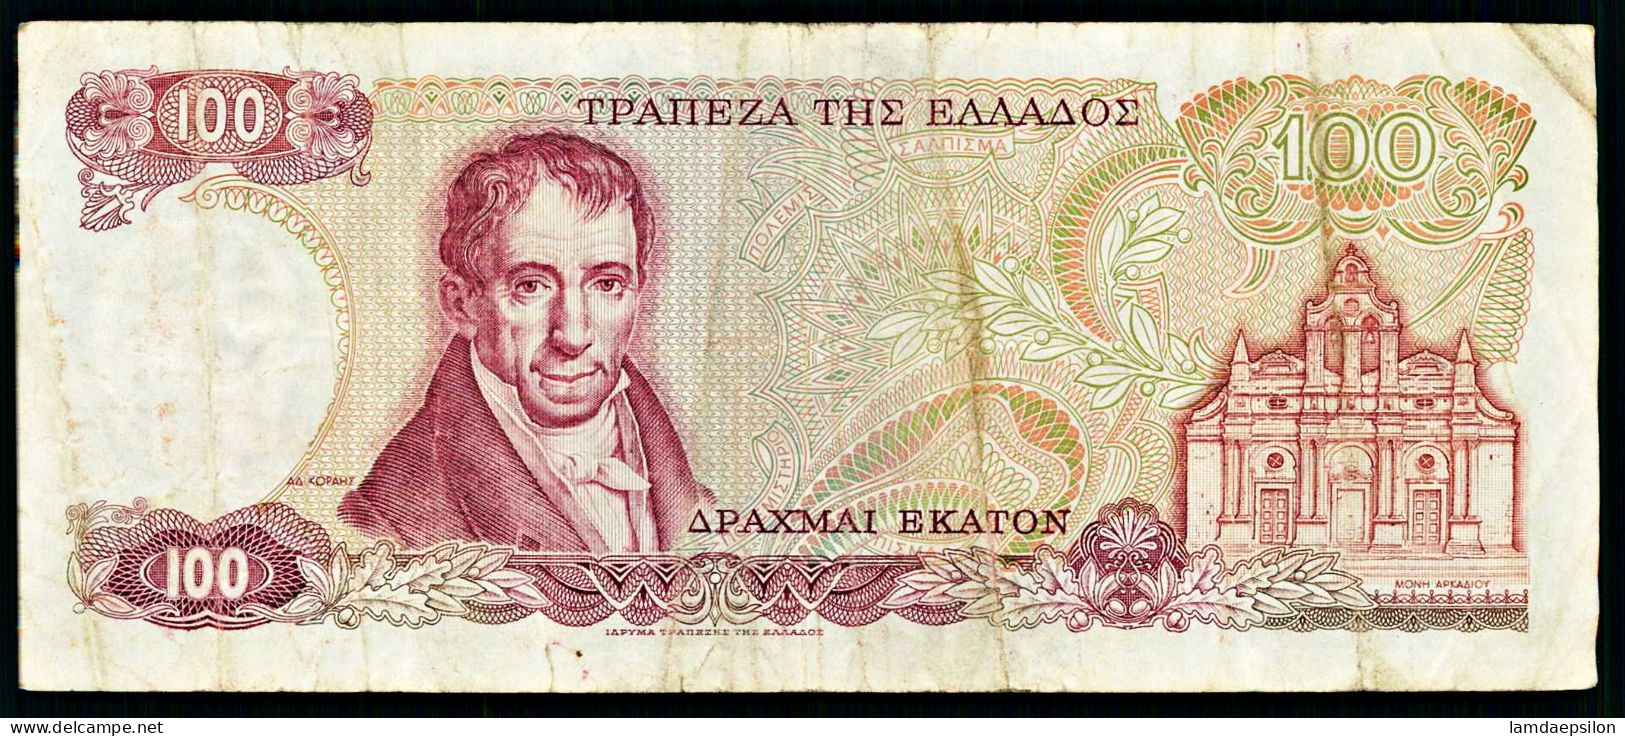 A10  GRECE   BILLETS DU MONDE   BANKNOTES   100 Drachmes  1978 - Grèce